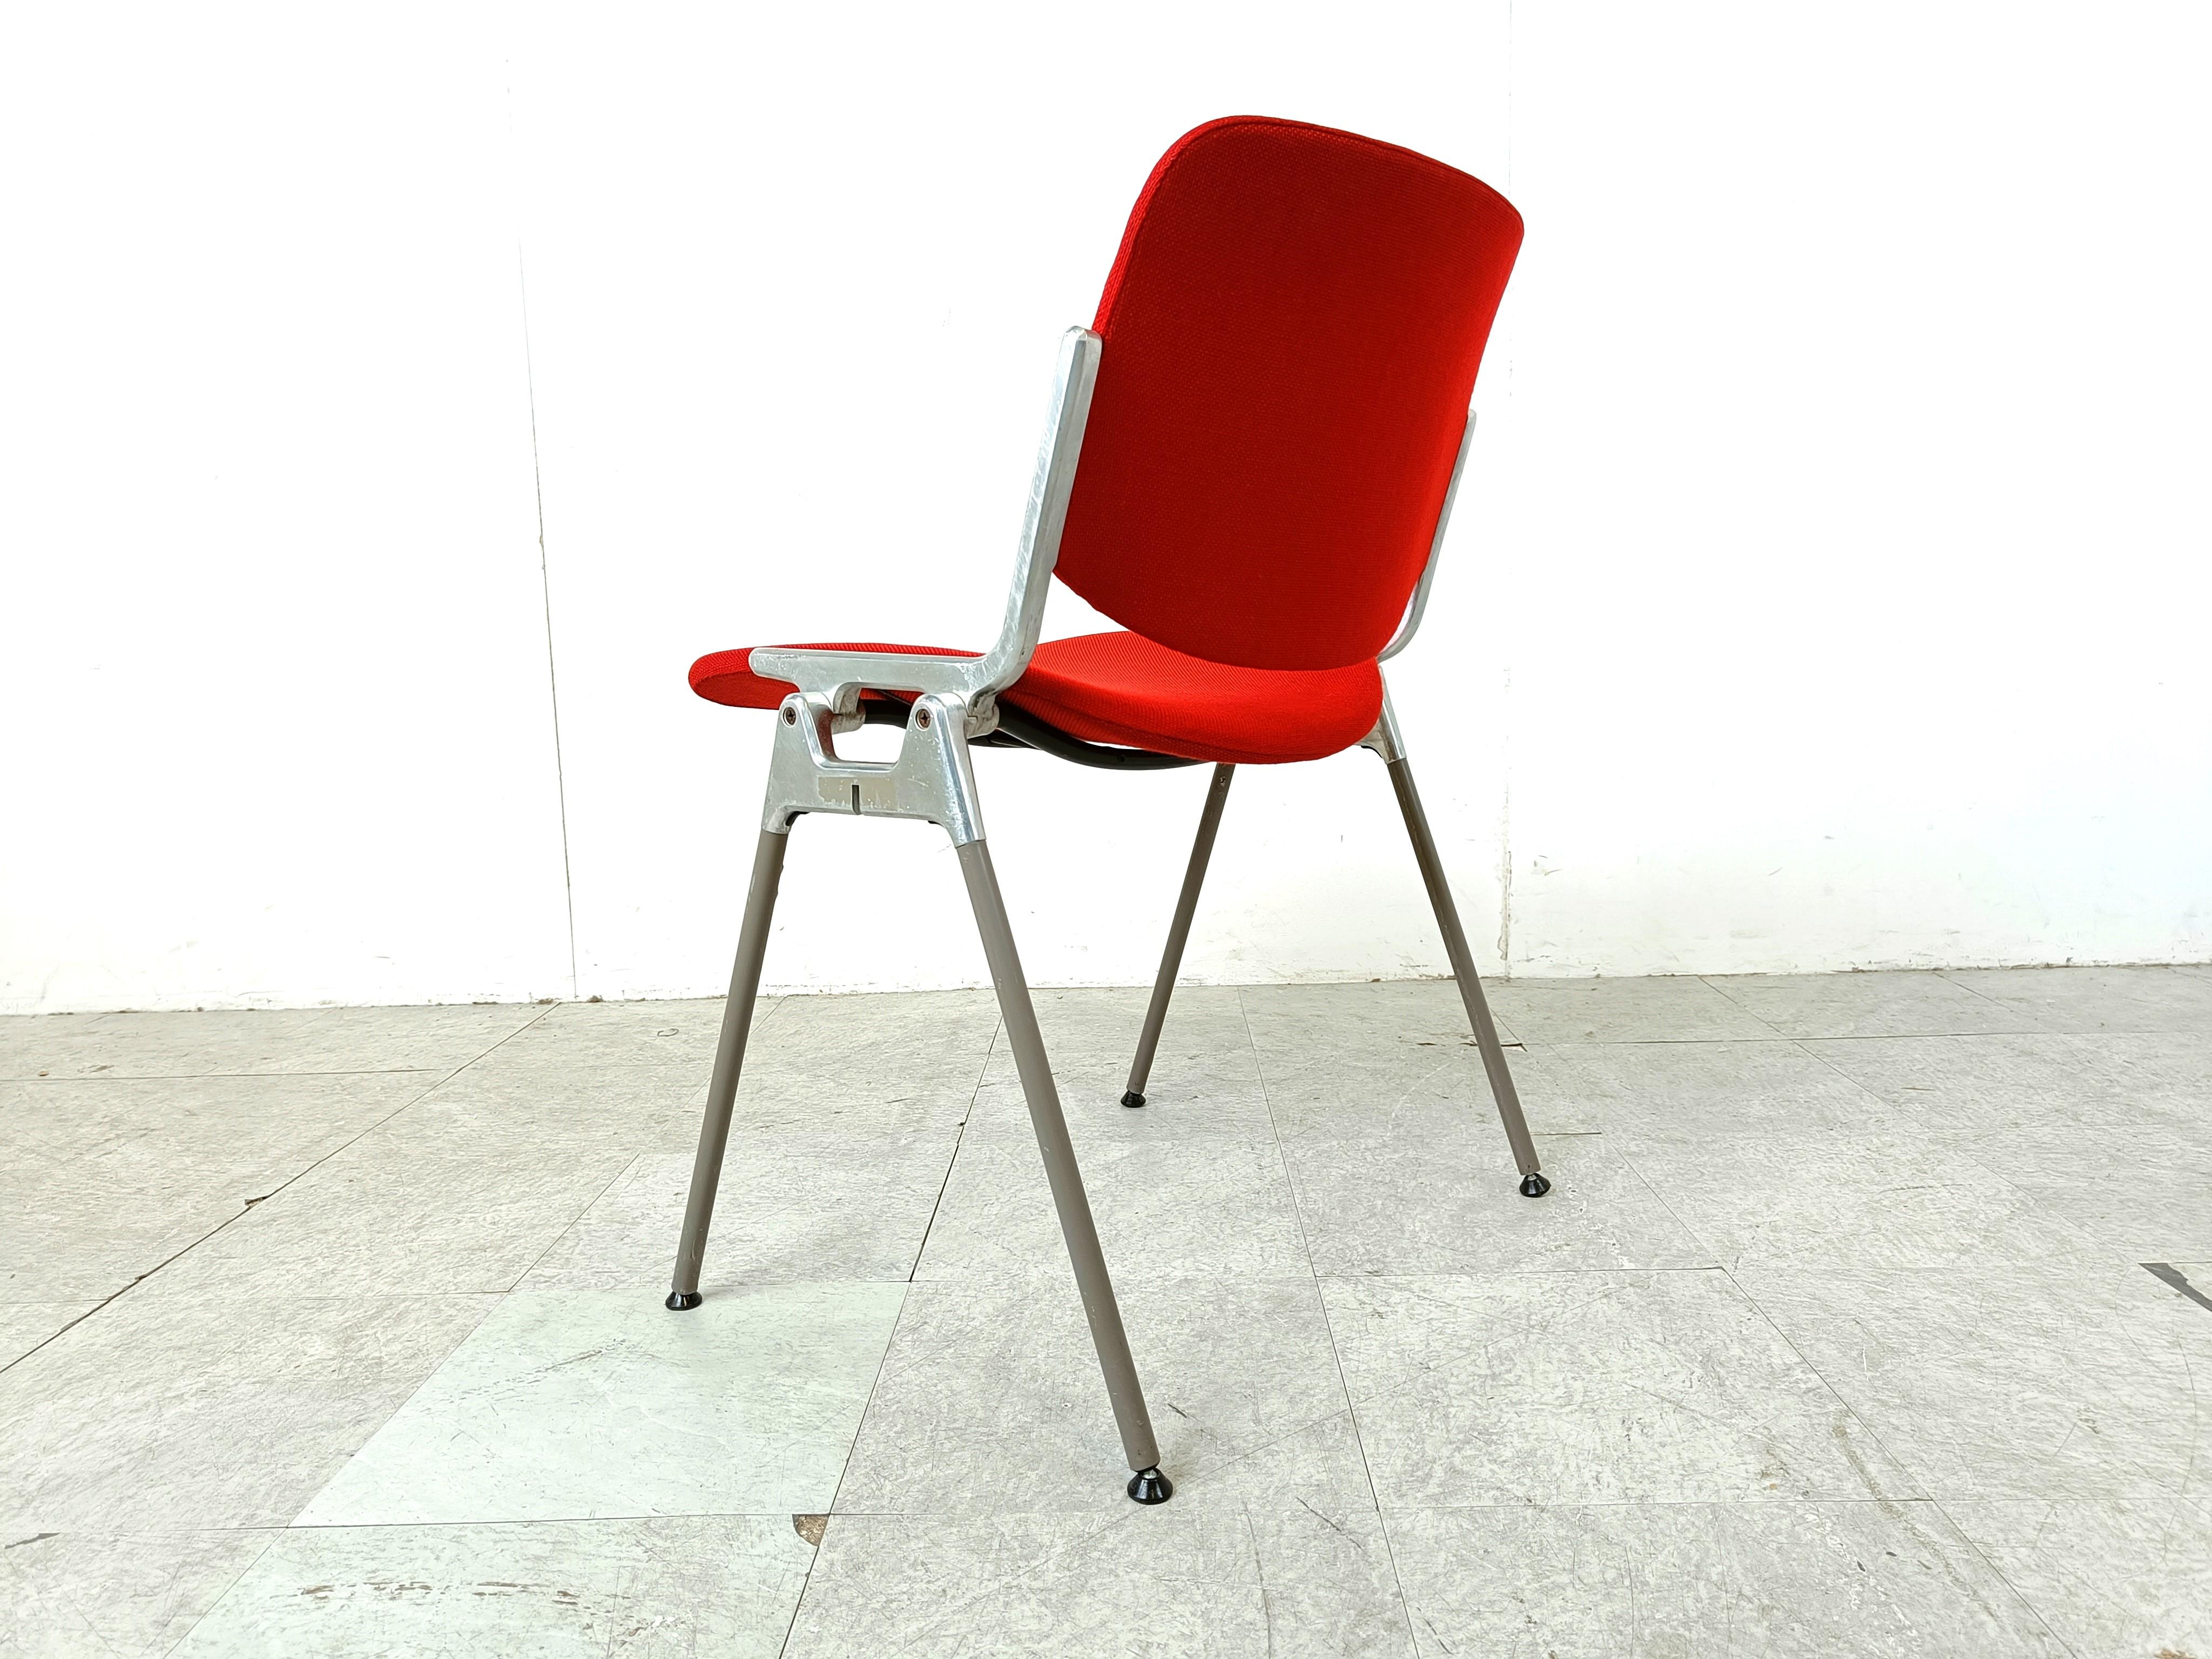 Vintage Esszimmerstühle oder Beistellstühle, entworfen von Giancarlo Piretti für Castelli.

Diese Stühle können gestapelt werden und sind bei gelegentlichem Gebrauch sehr platzsparend.

neu gepolstert mit rotem Stoff.

Guter Originalzustand mit